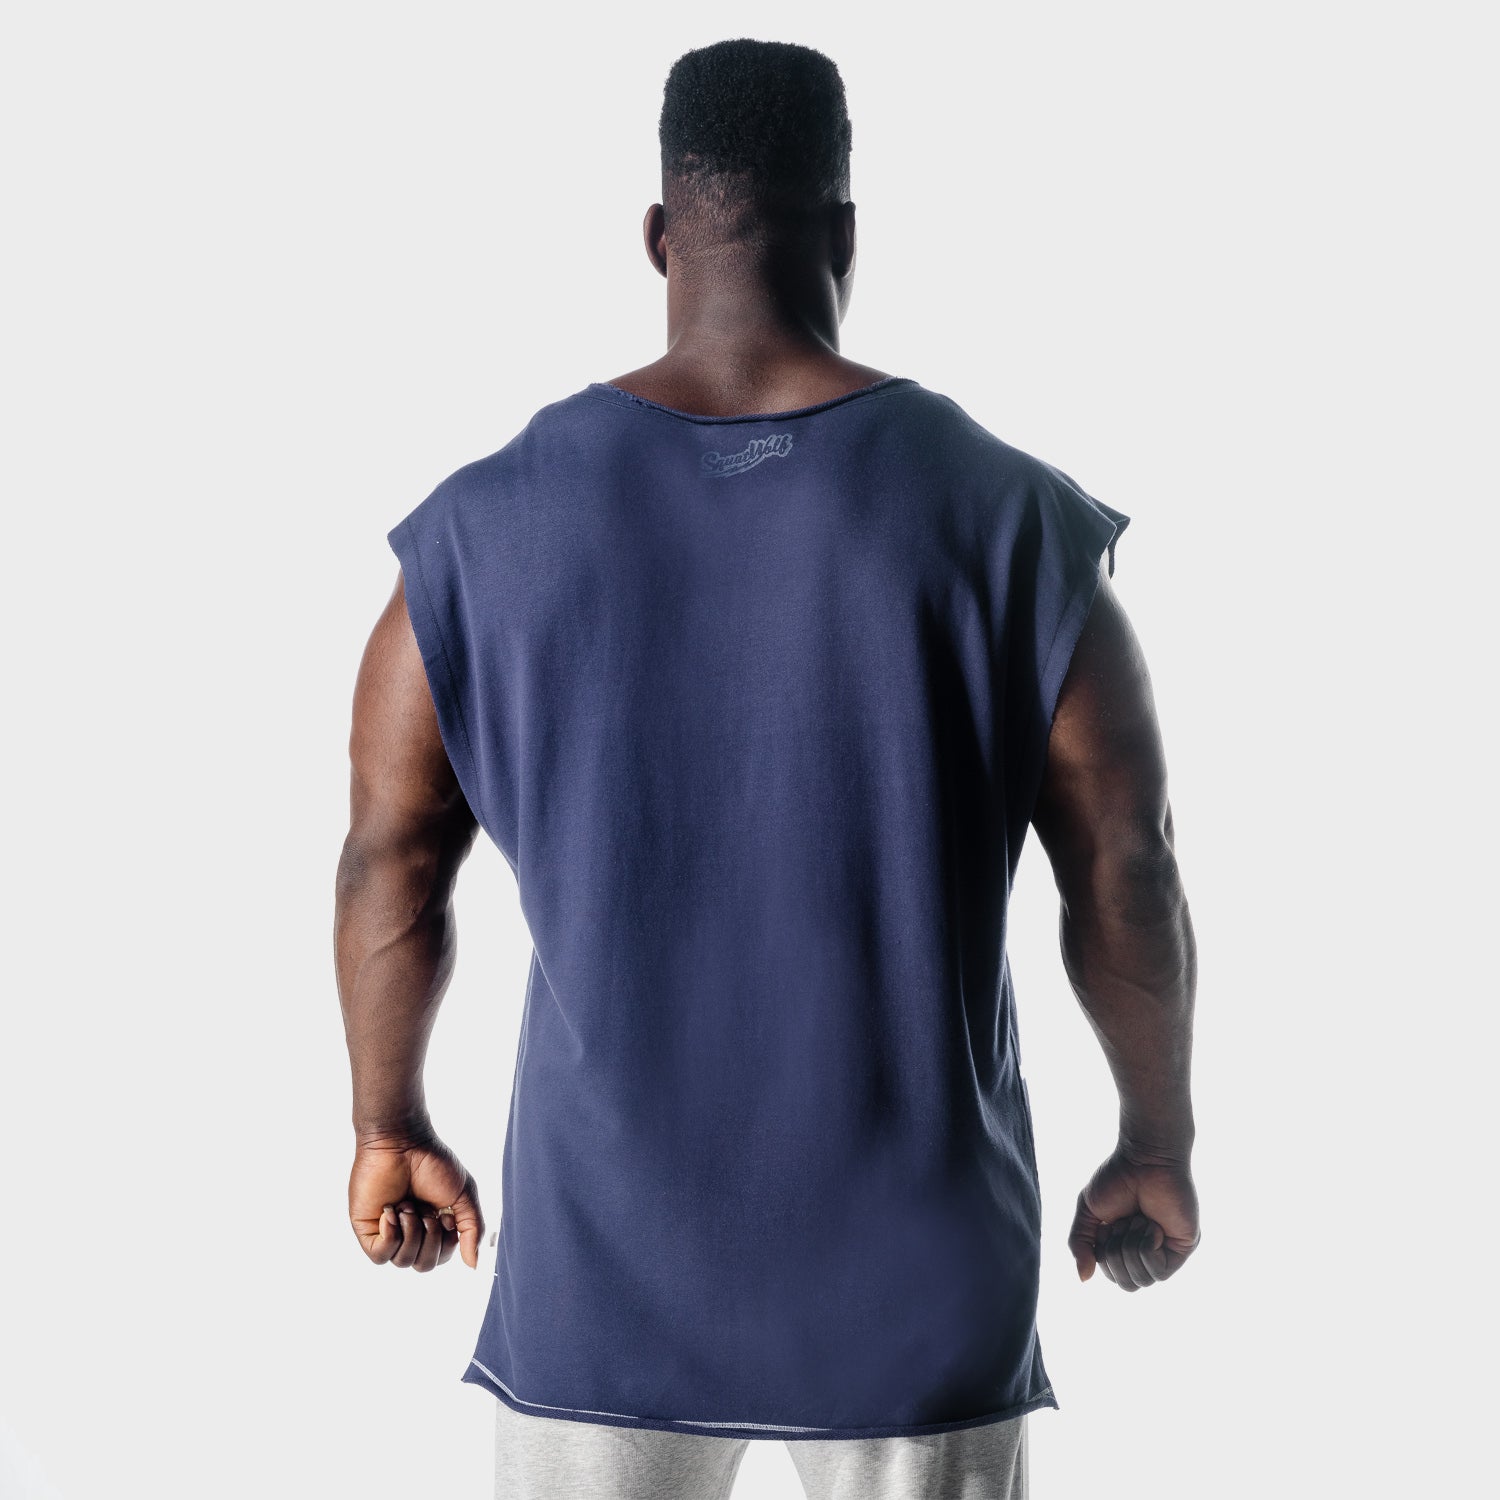 squatwolf-gym-wear-golden-era-sweat-tank-blue-workout-tank-tops-for-men